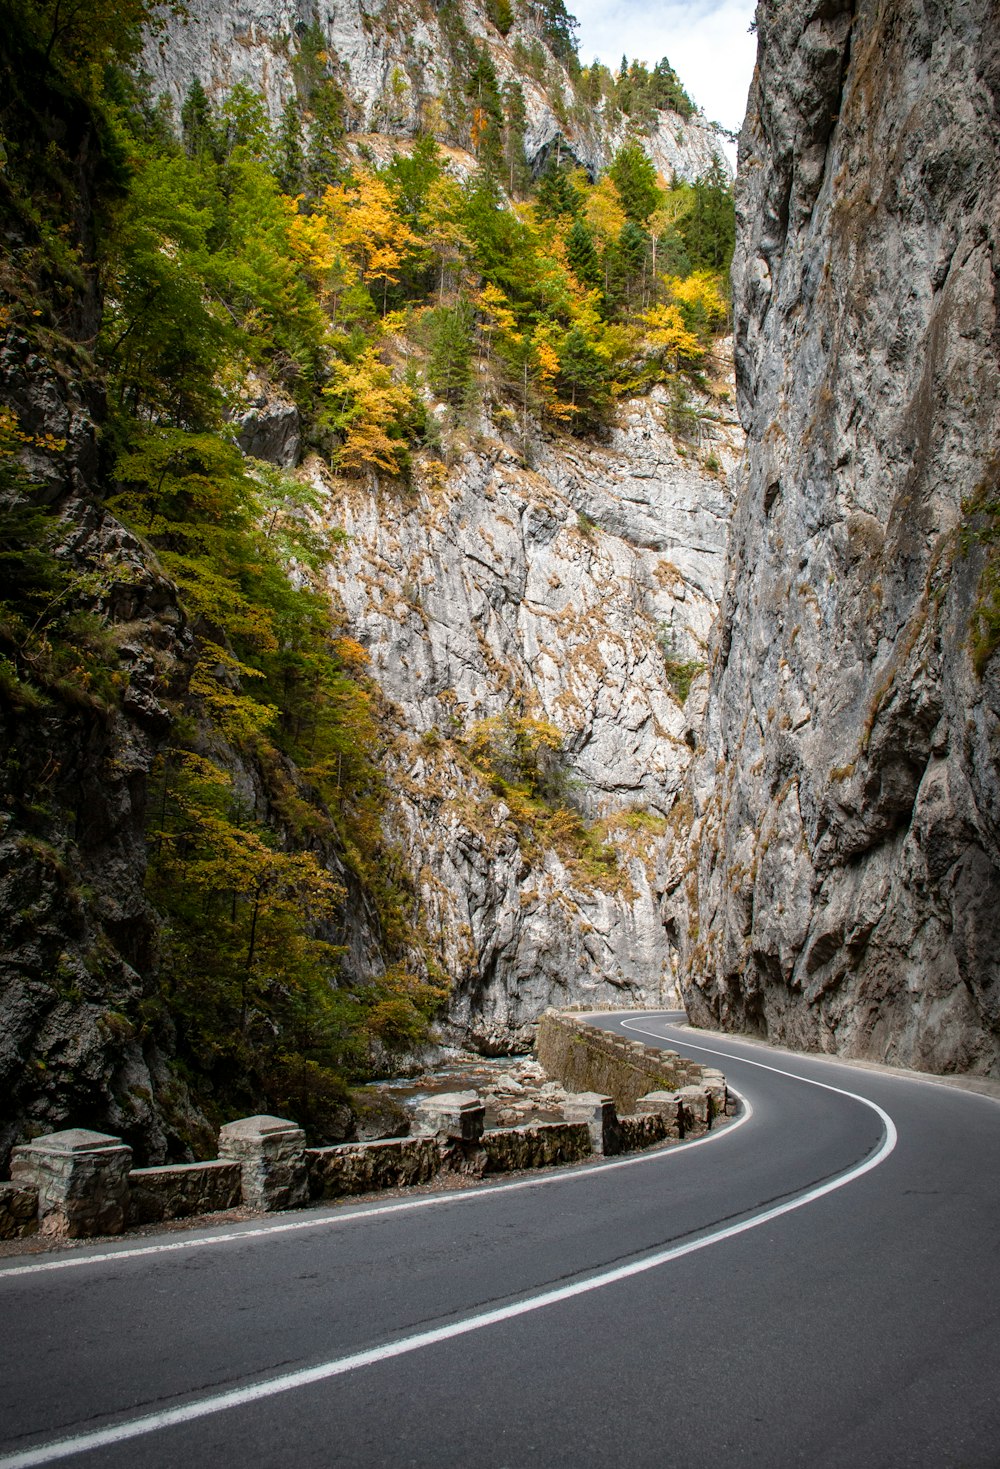 Carretera asfaltada rodeada de montañas rocosas